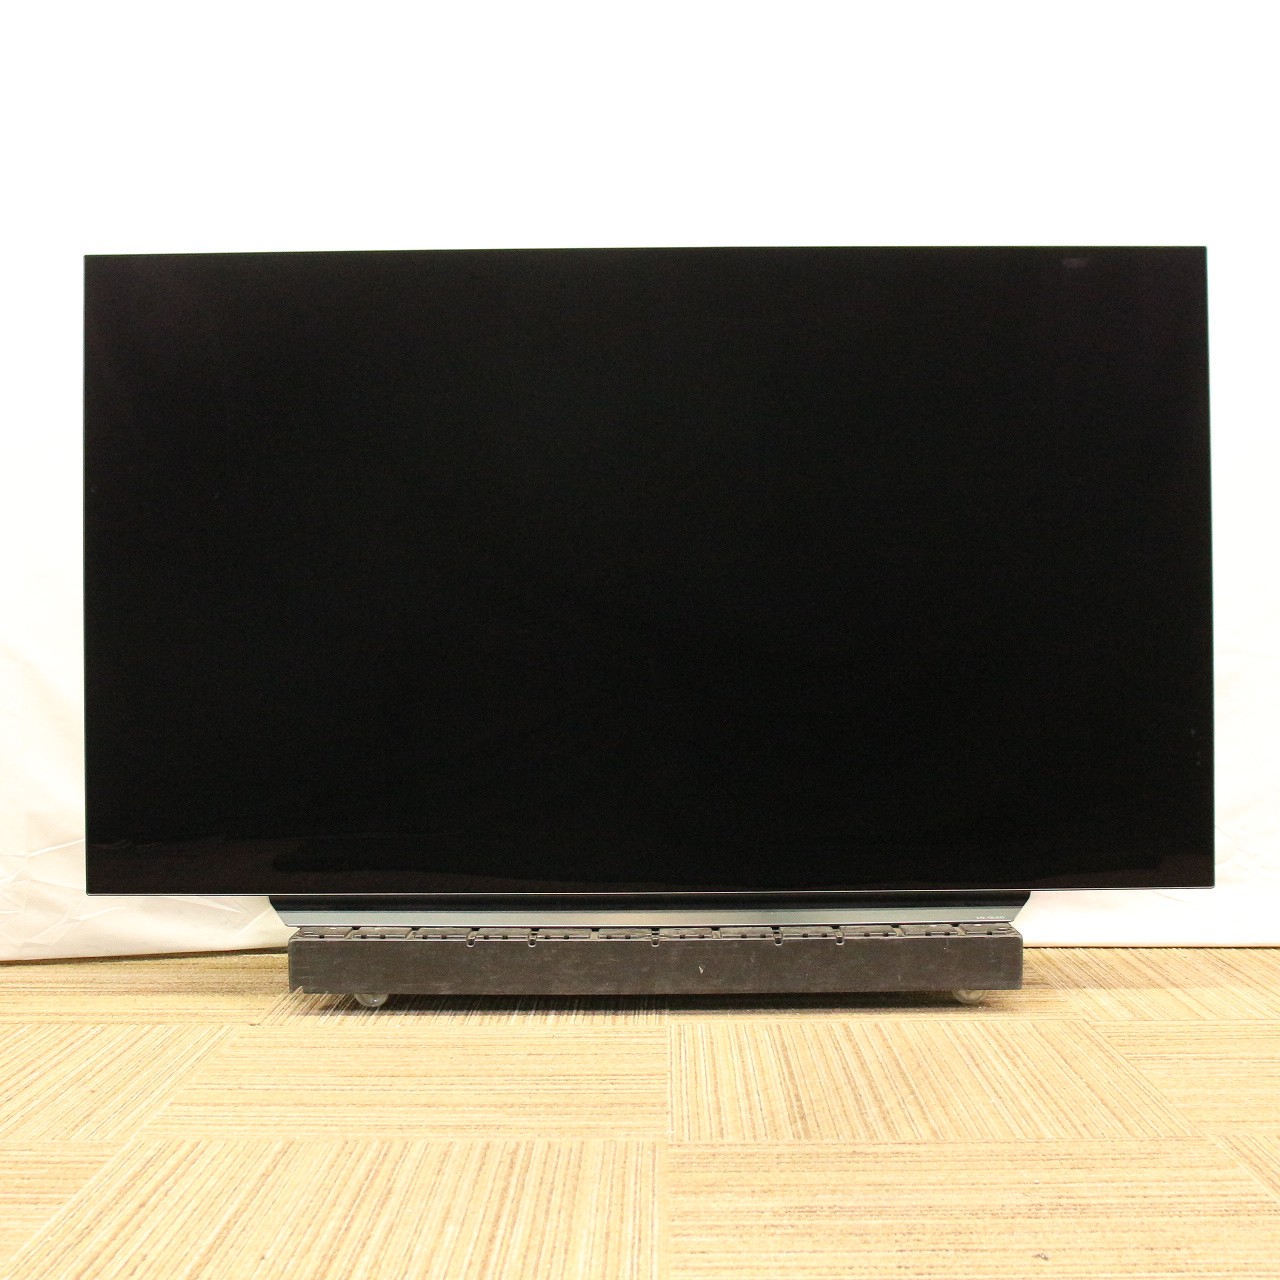 TOSHIBA REGZA 65Z570L 東芝 液晶テレビ 65型 ジャンク種類液晶テレビ